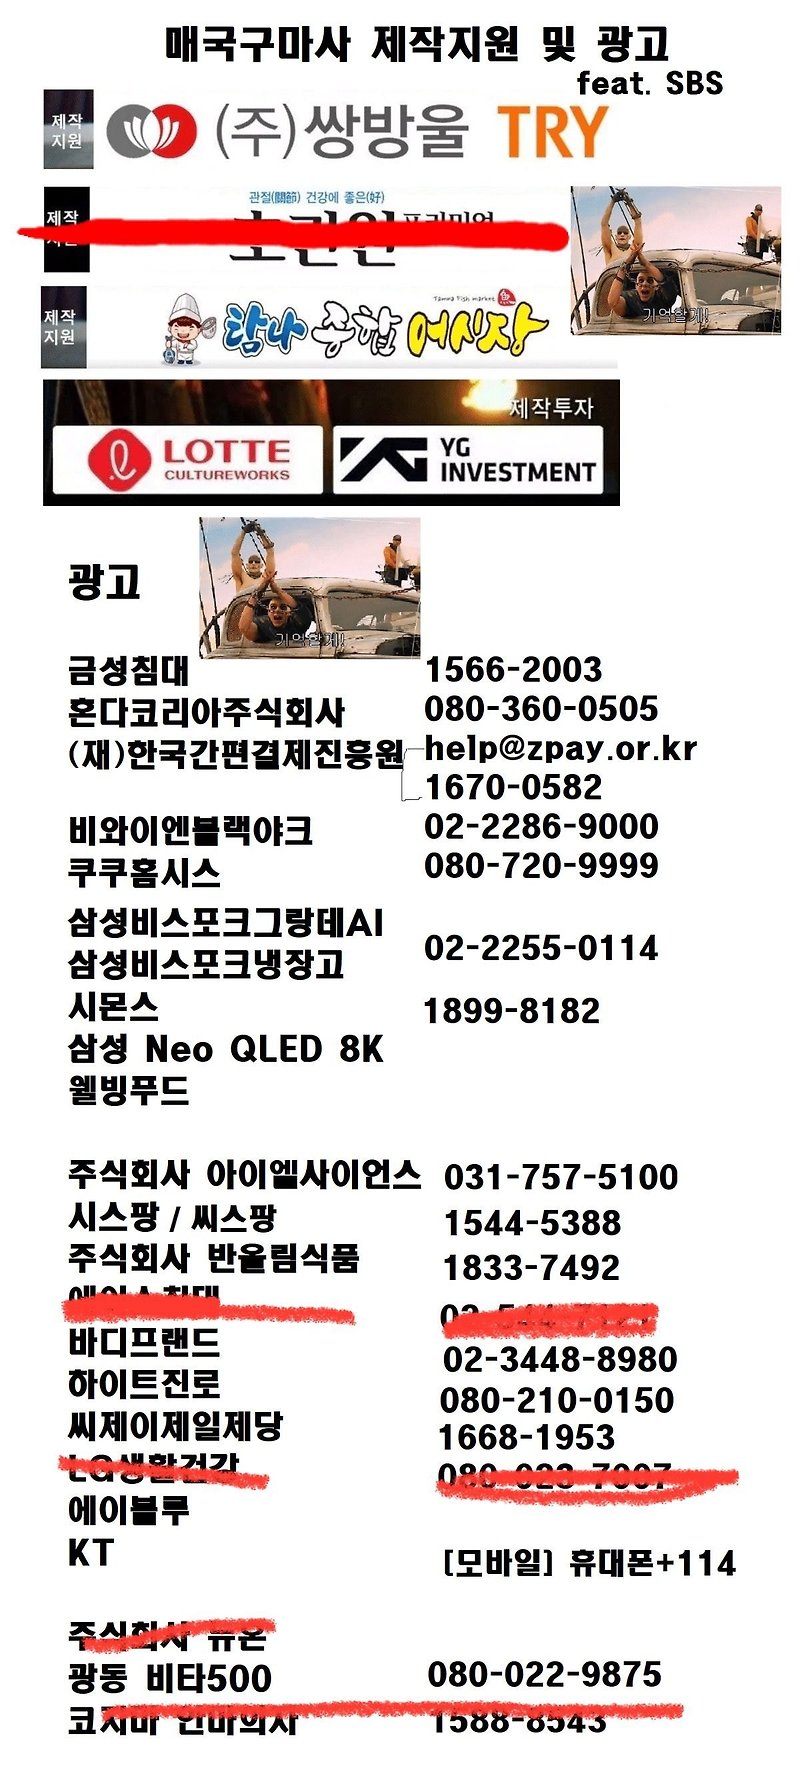 조선구마사 제작협찬/제작투자/광고사 목록 (업뎃)